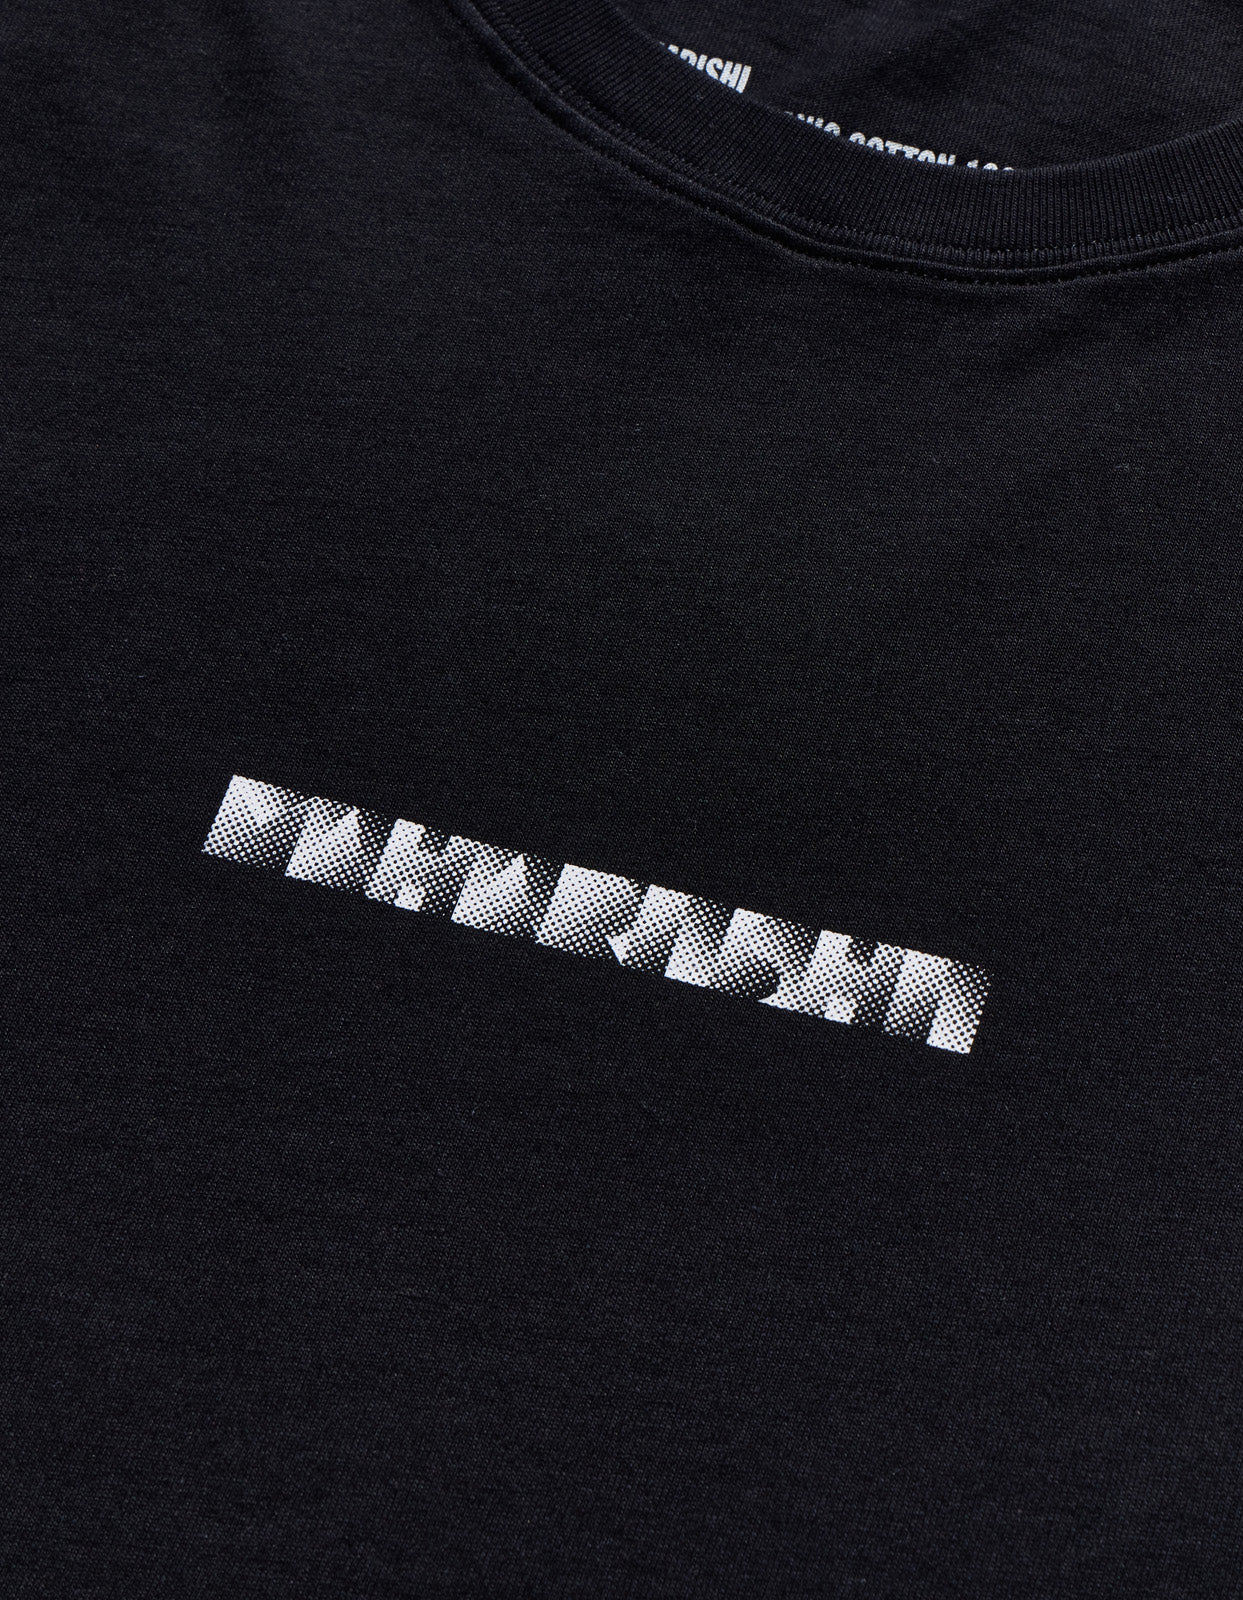 Maharishi Pointillist Maharishi T-Shirt Black